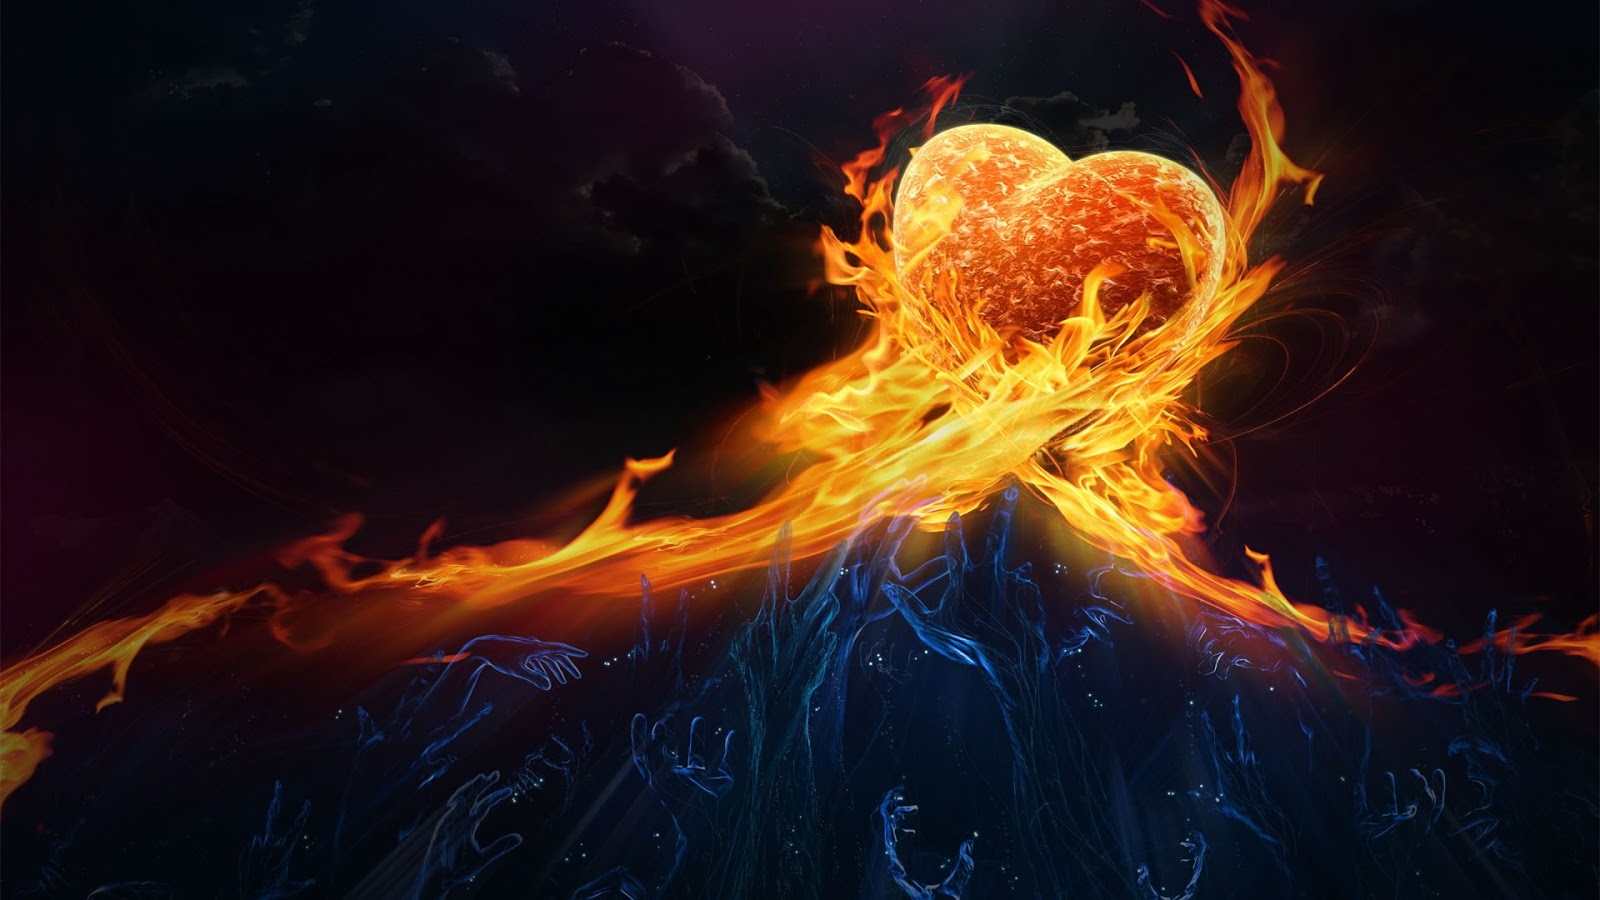 Tải hình nền trái tim tình yêu 3D đẹp nhất hiện nay